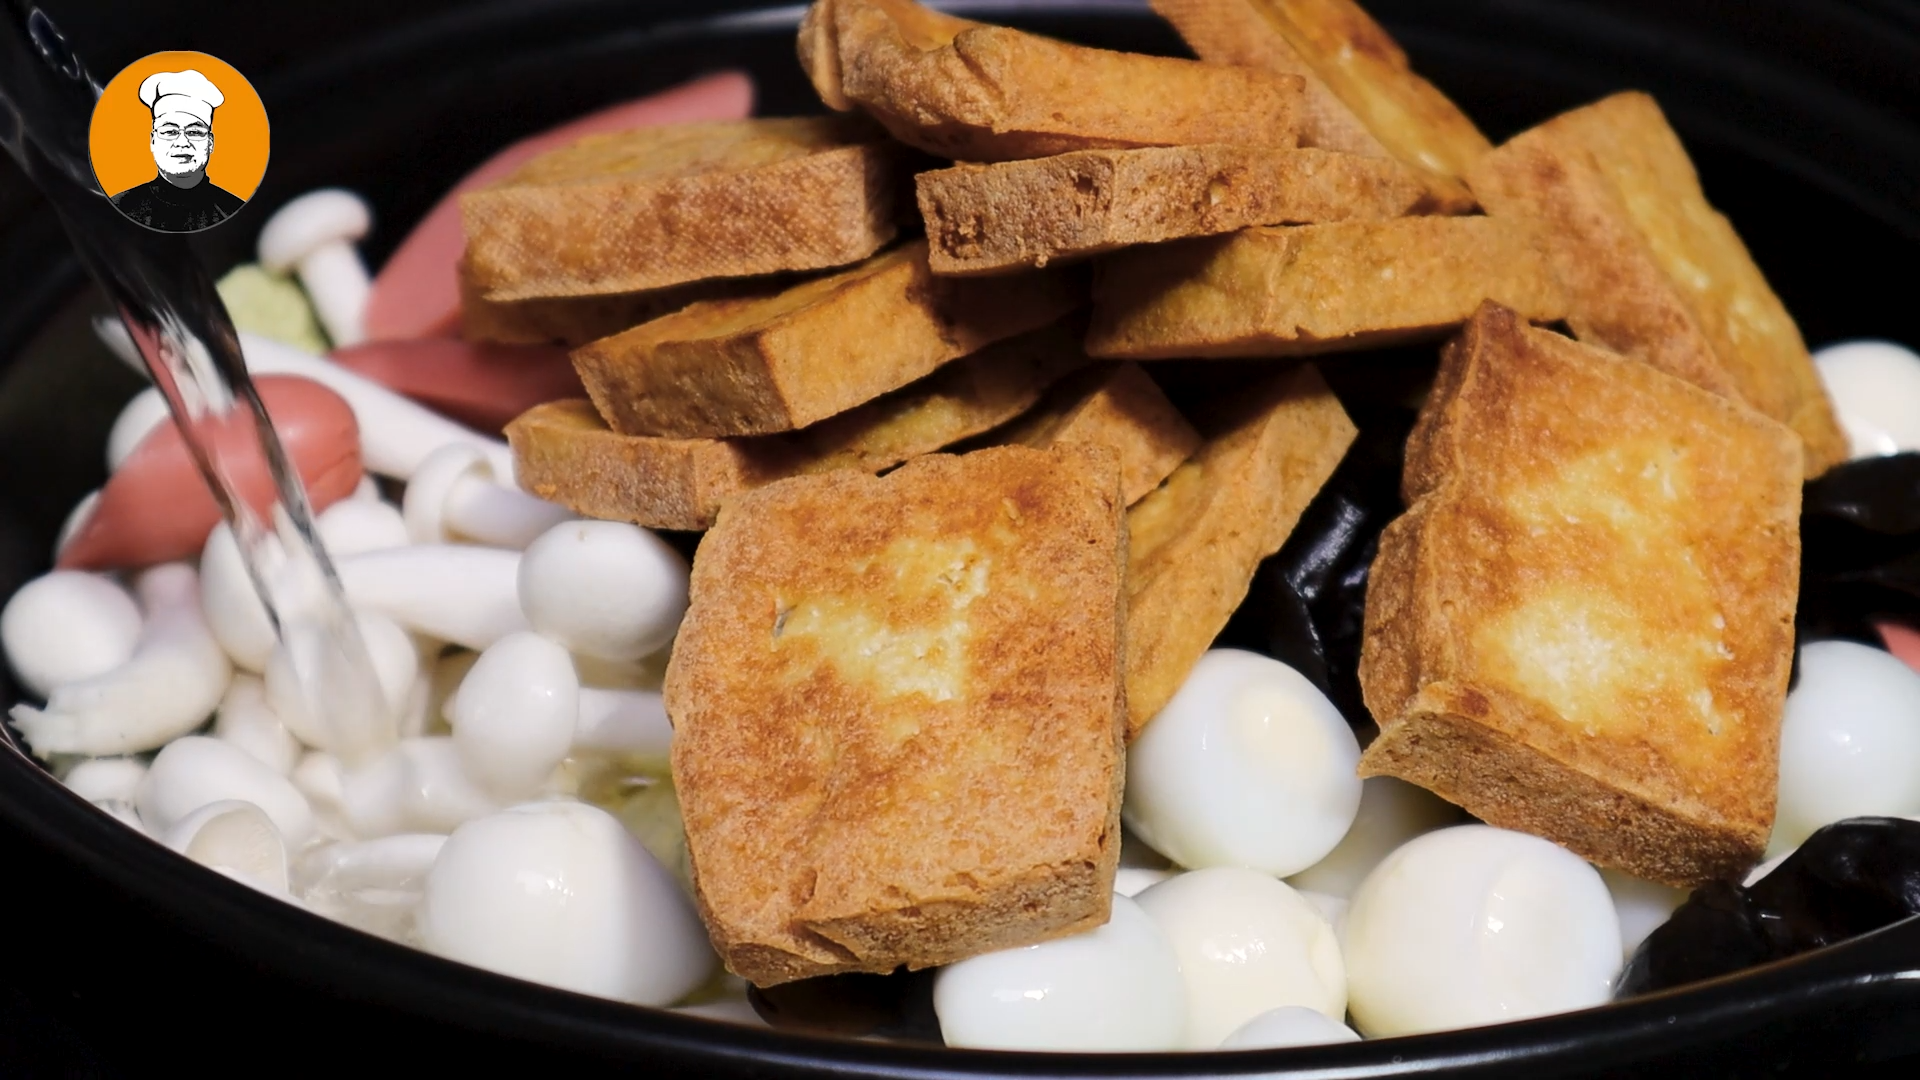 砂锅豆腐的做法,砂锅豆腐的做法家常